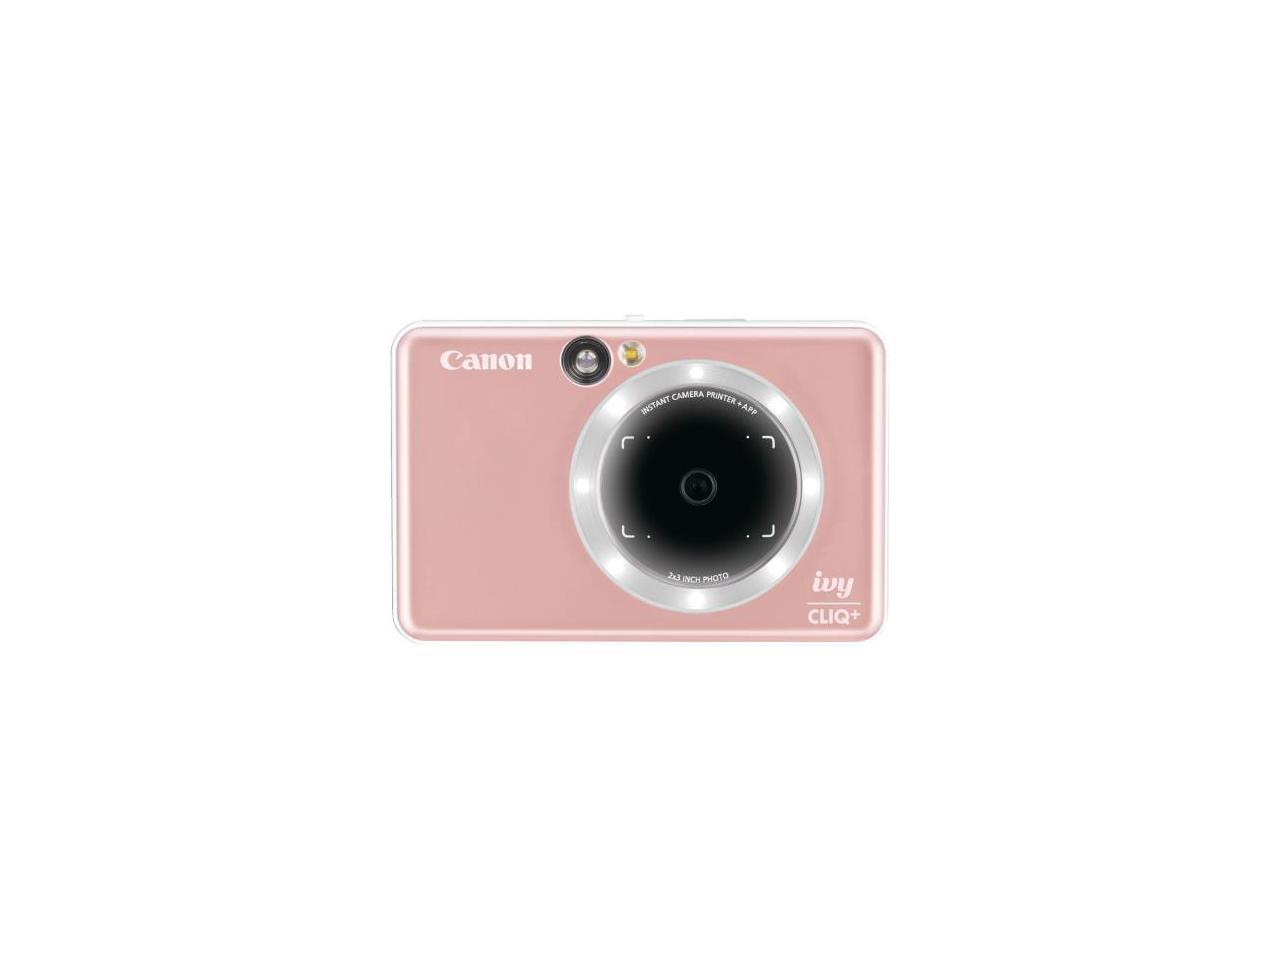 Canon IVY CLIQ+ Instant Digital Camera Printer + App via Bluetooth Rose Gold